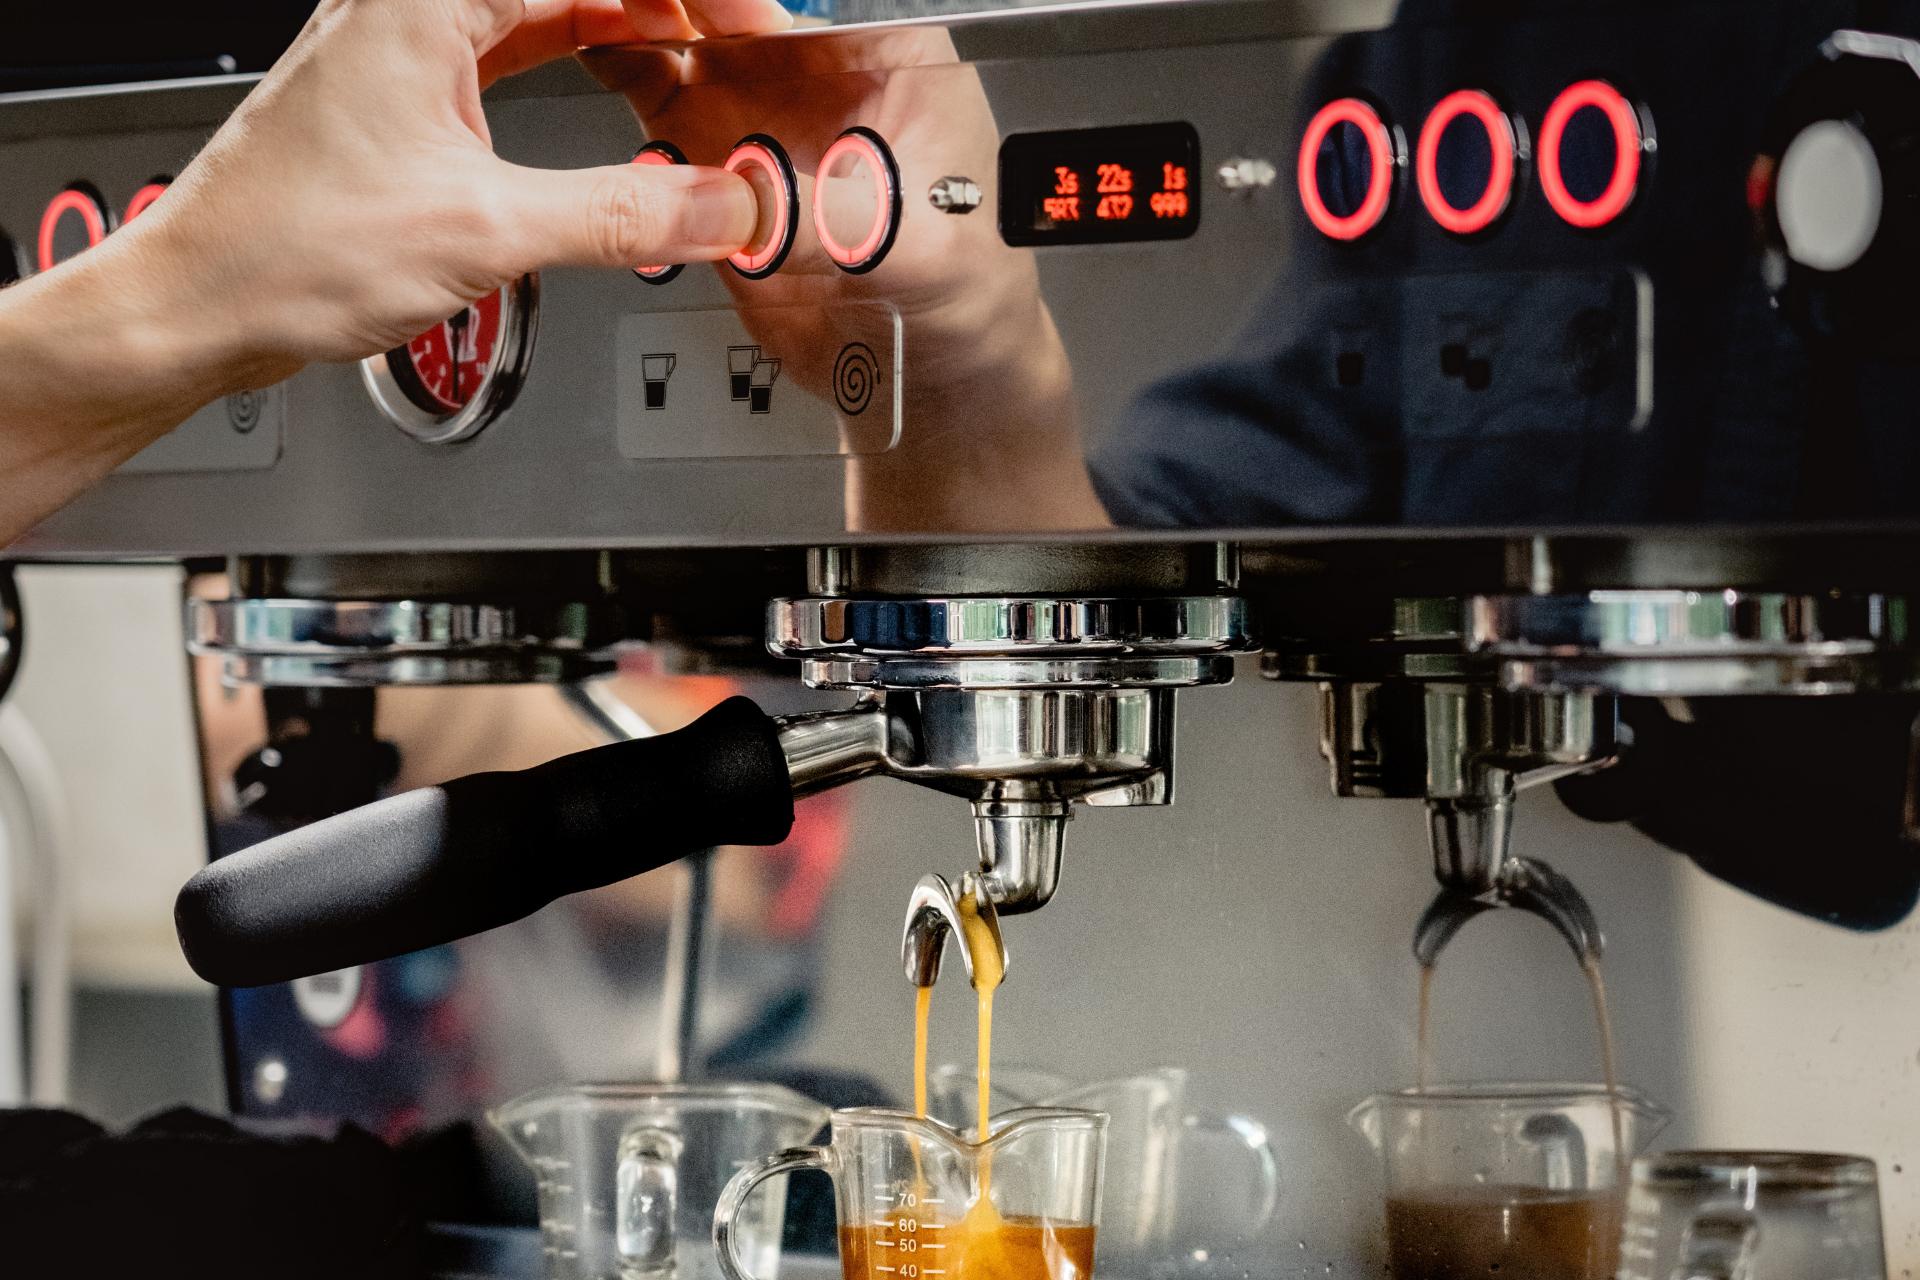 Guy using expensive espresso machine to prepare coffee